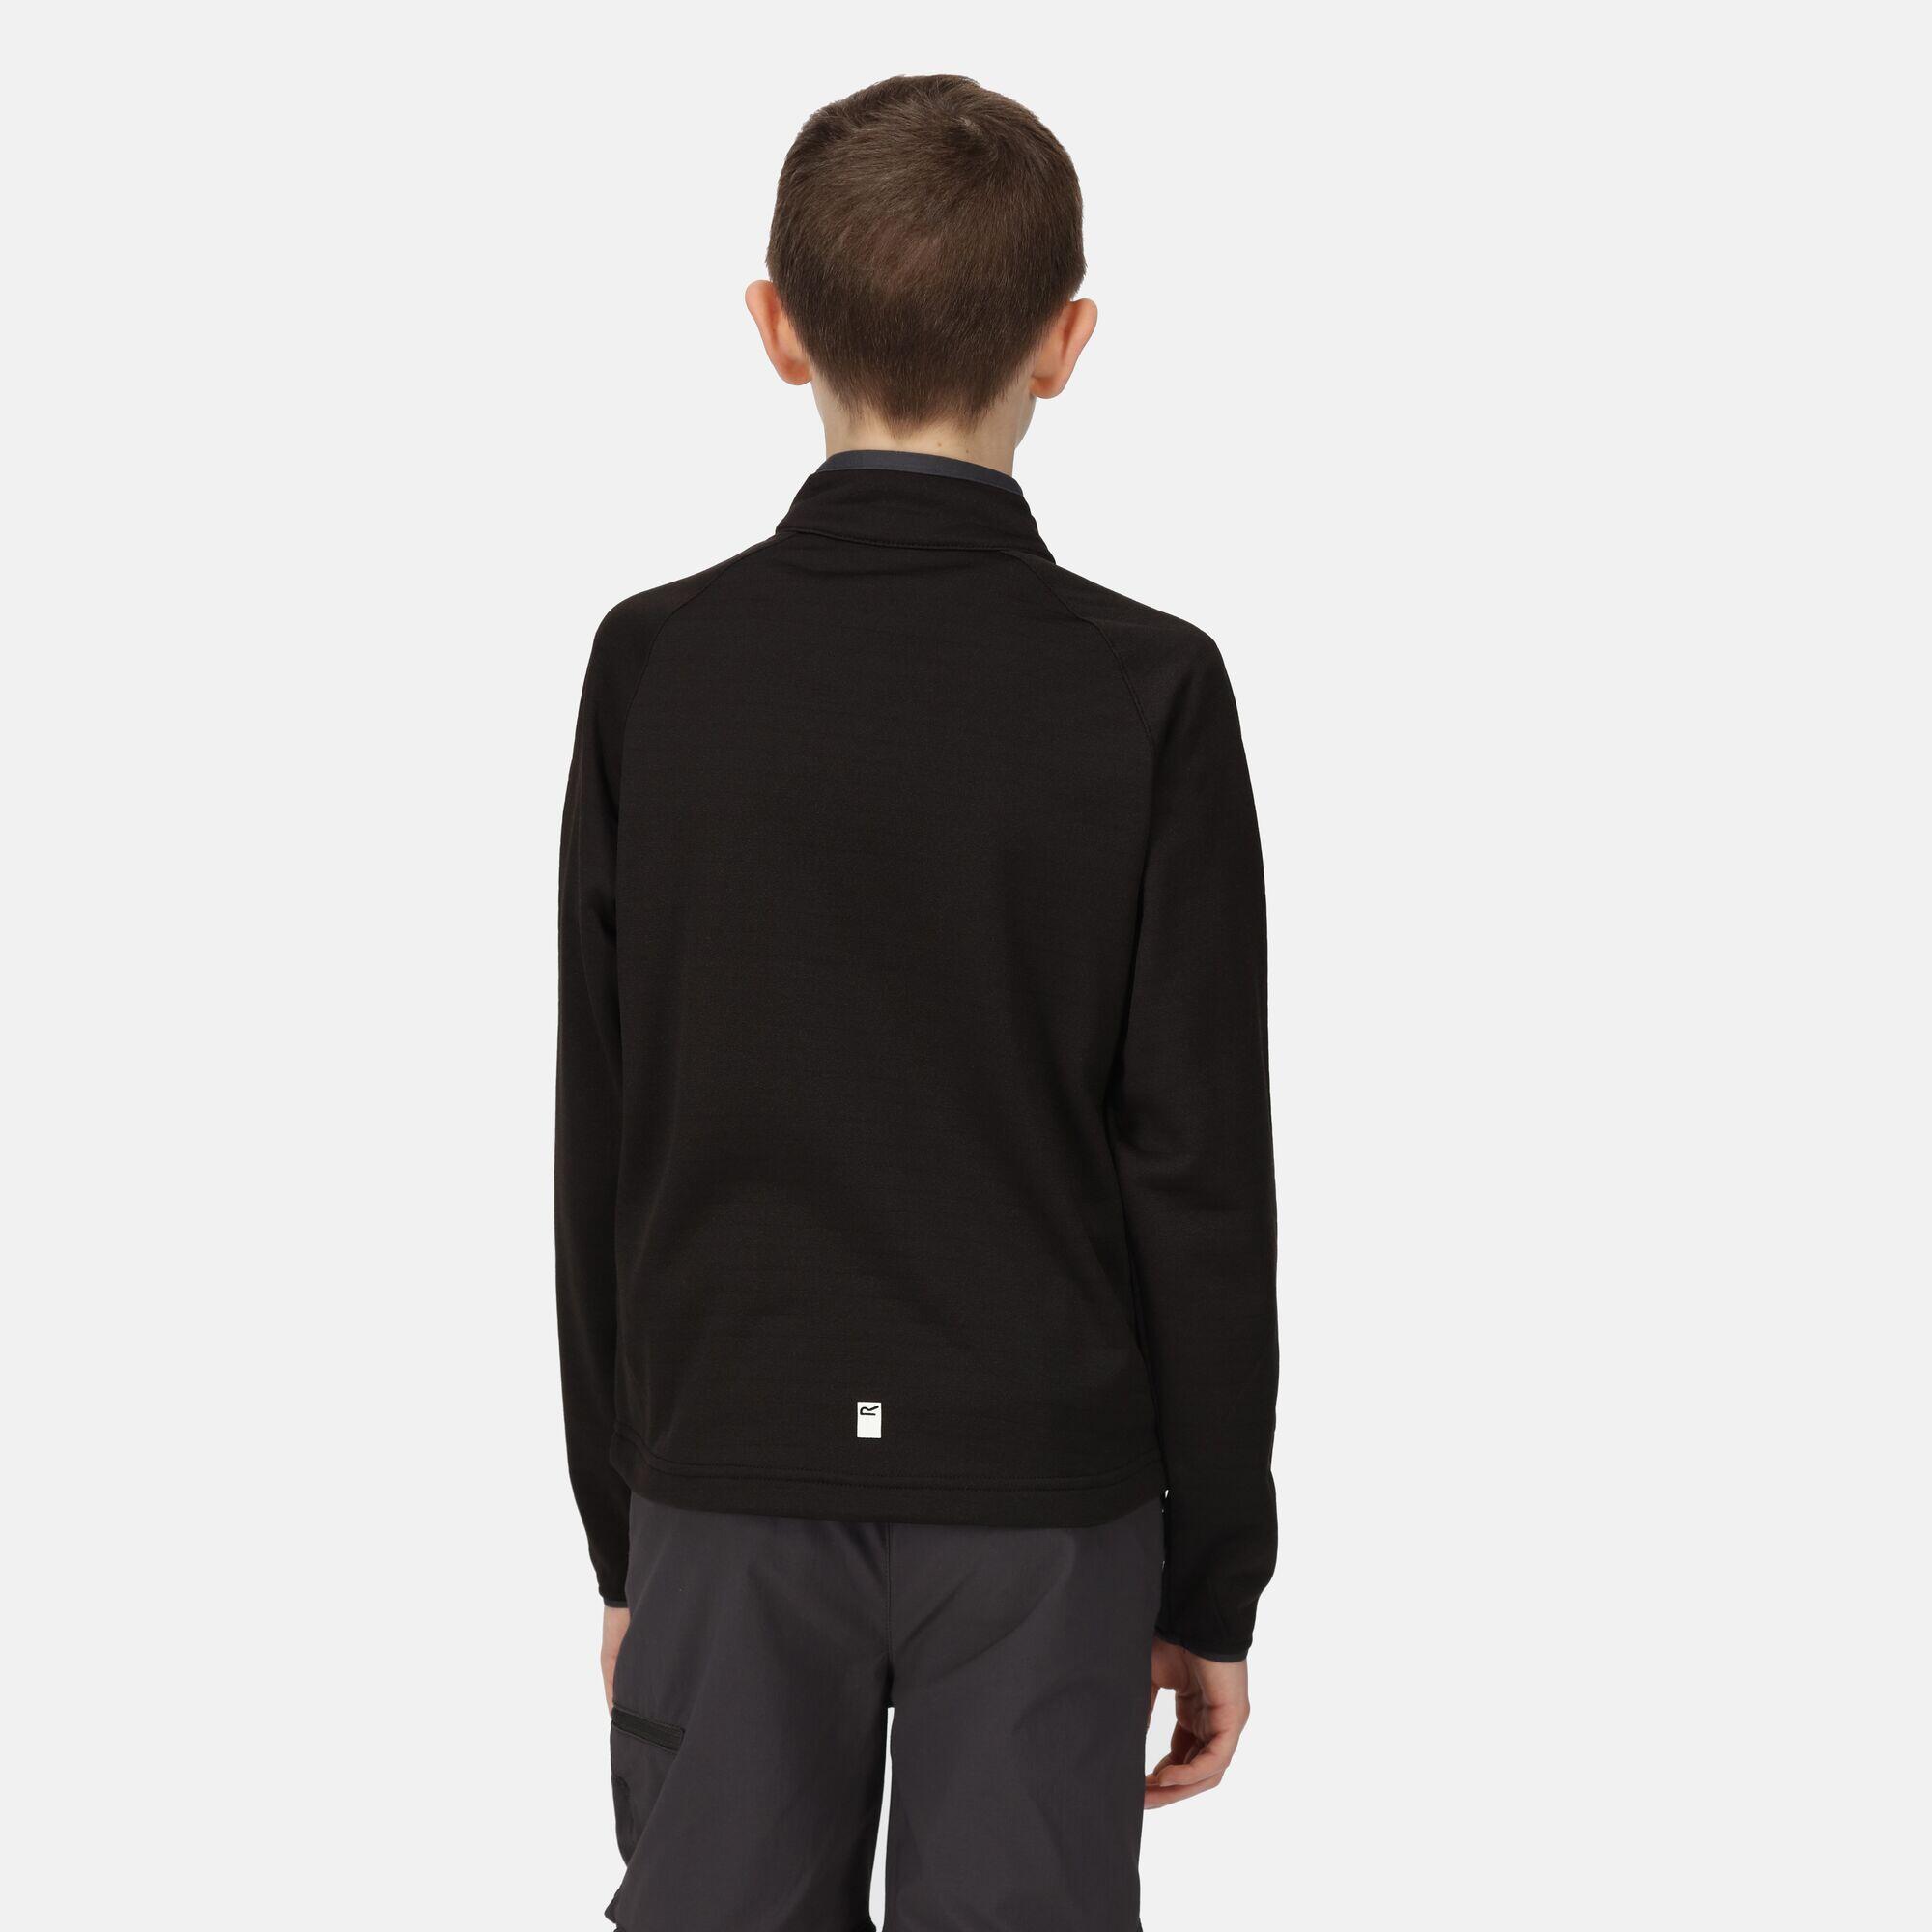 Junior Highton Lite II Walking Kids Full Zip Fleece - Black 2/6